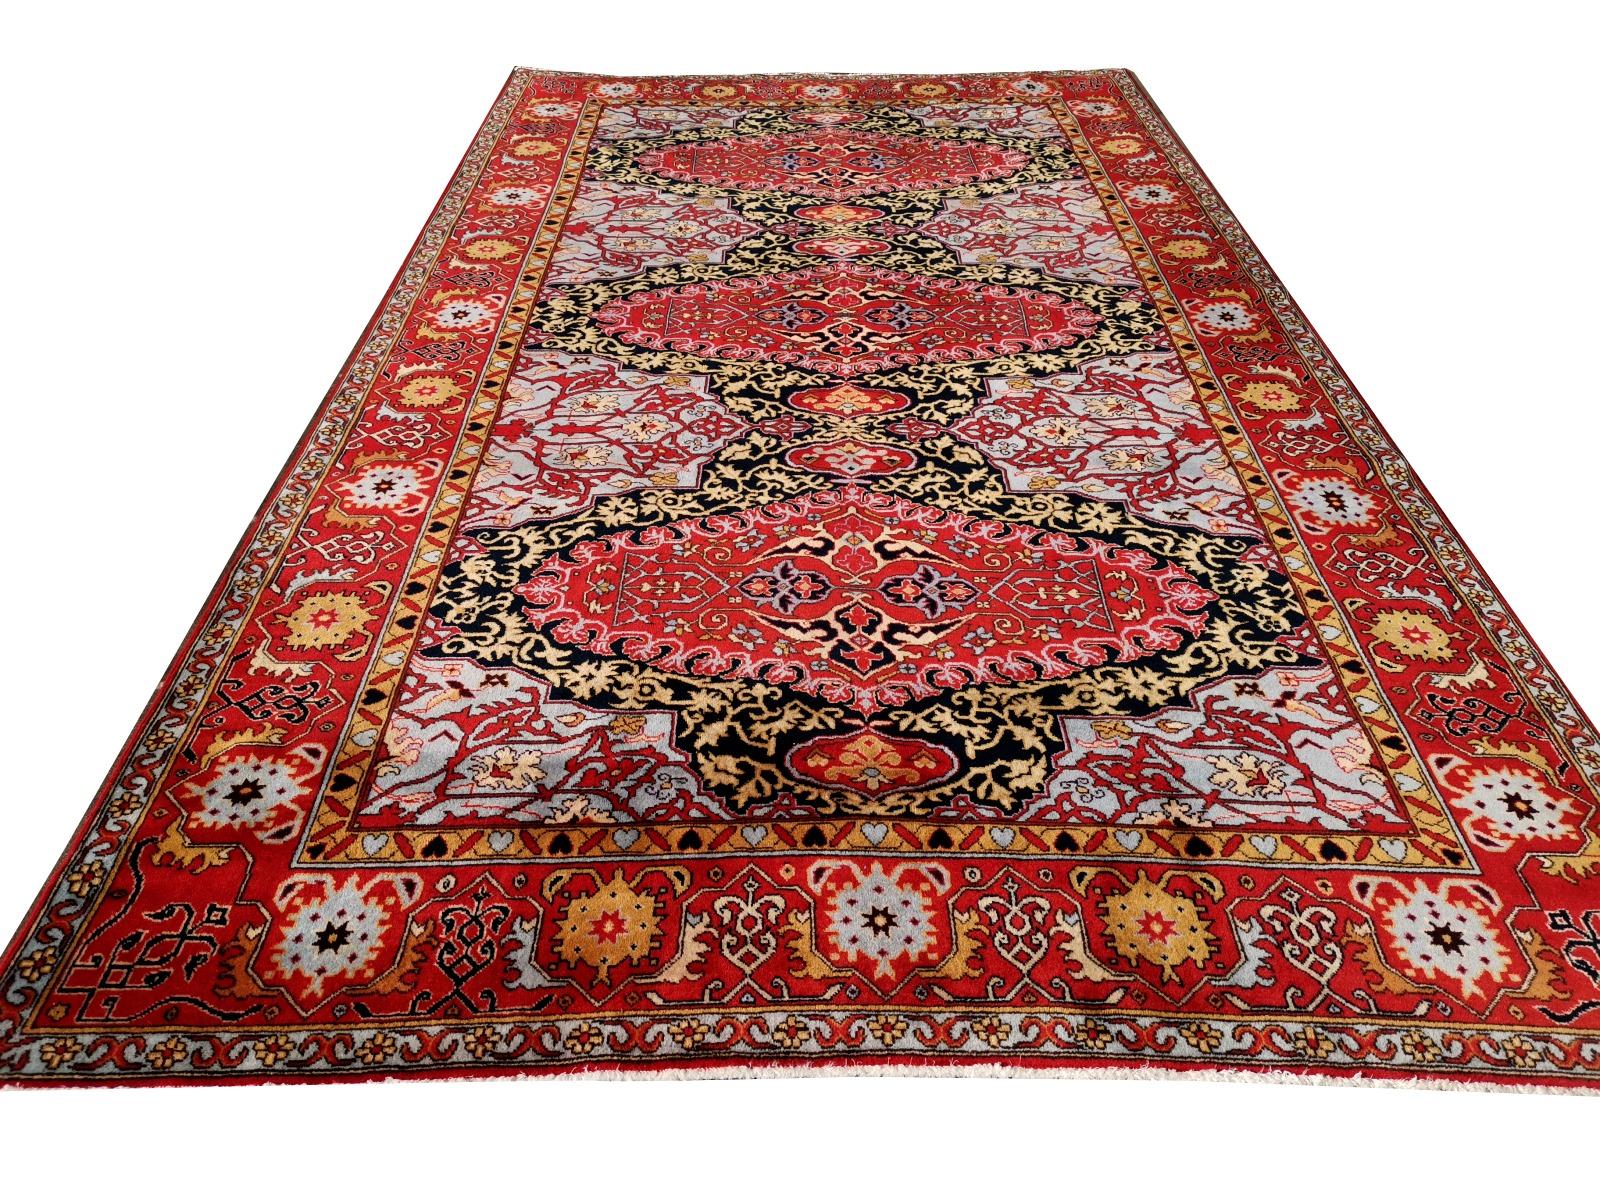 Dieser türkische Oushak-Teppich ist ein 1970er-Jahre-Teppich mit traditionellem Medaillon-Design aus dem 17. Jahrhundert. Typisch ist die schmale und lange Größe. Sie wurde aus feiner Wolle handgeknüpft. Die Farben sind leuchtend, und der Teppich